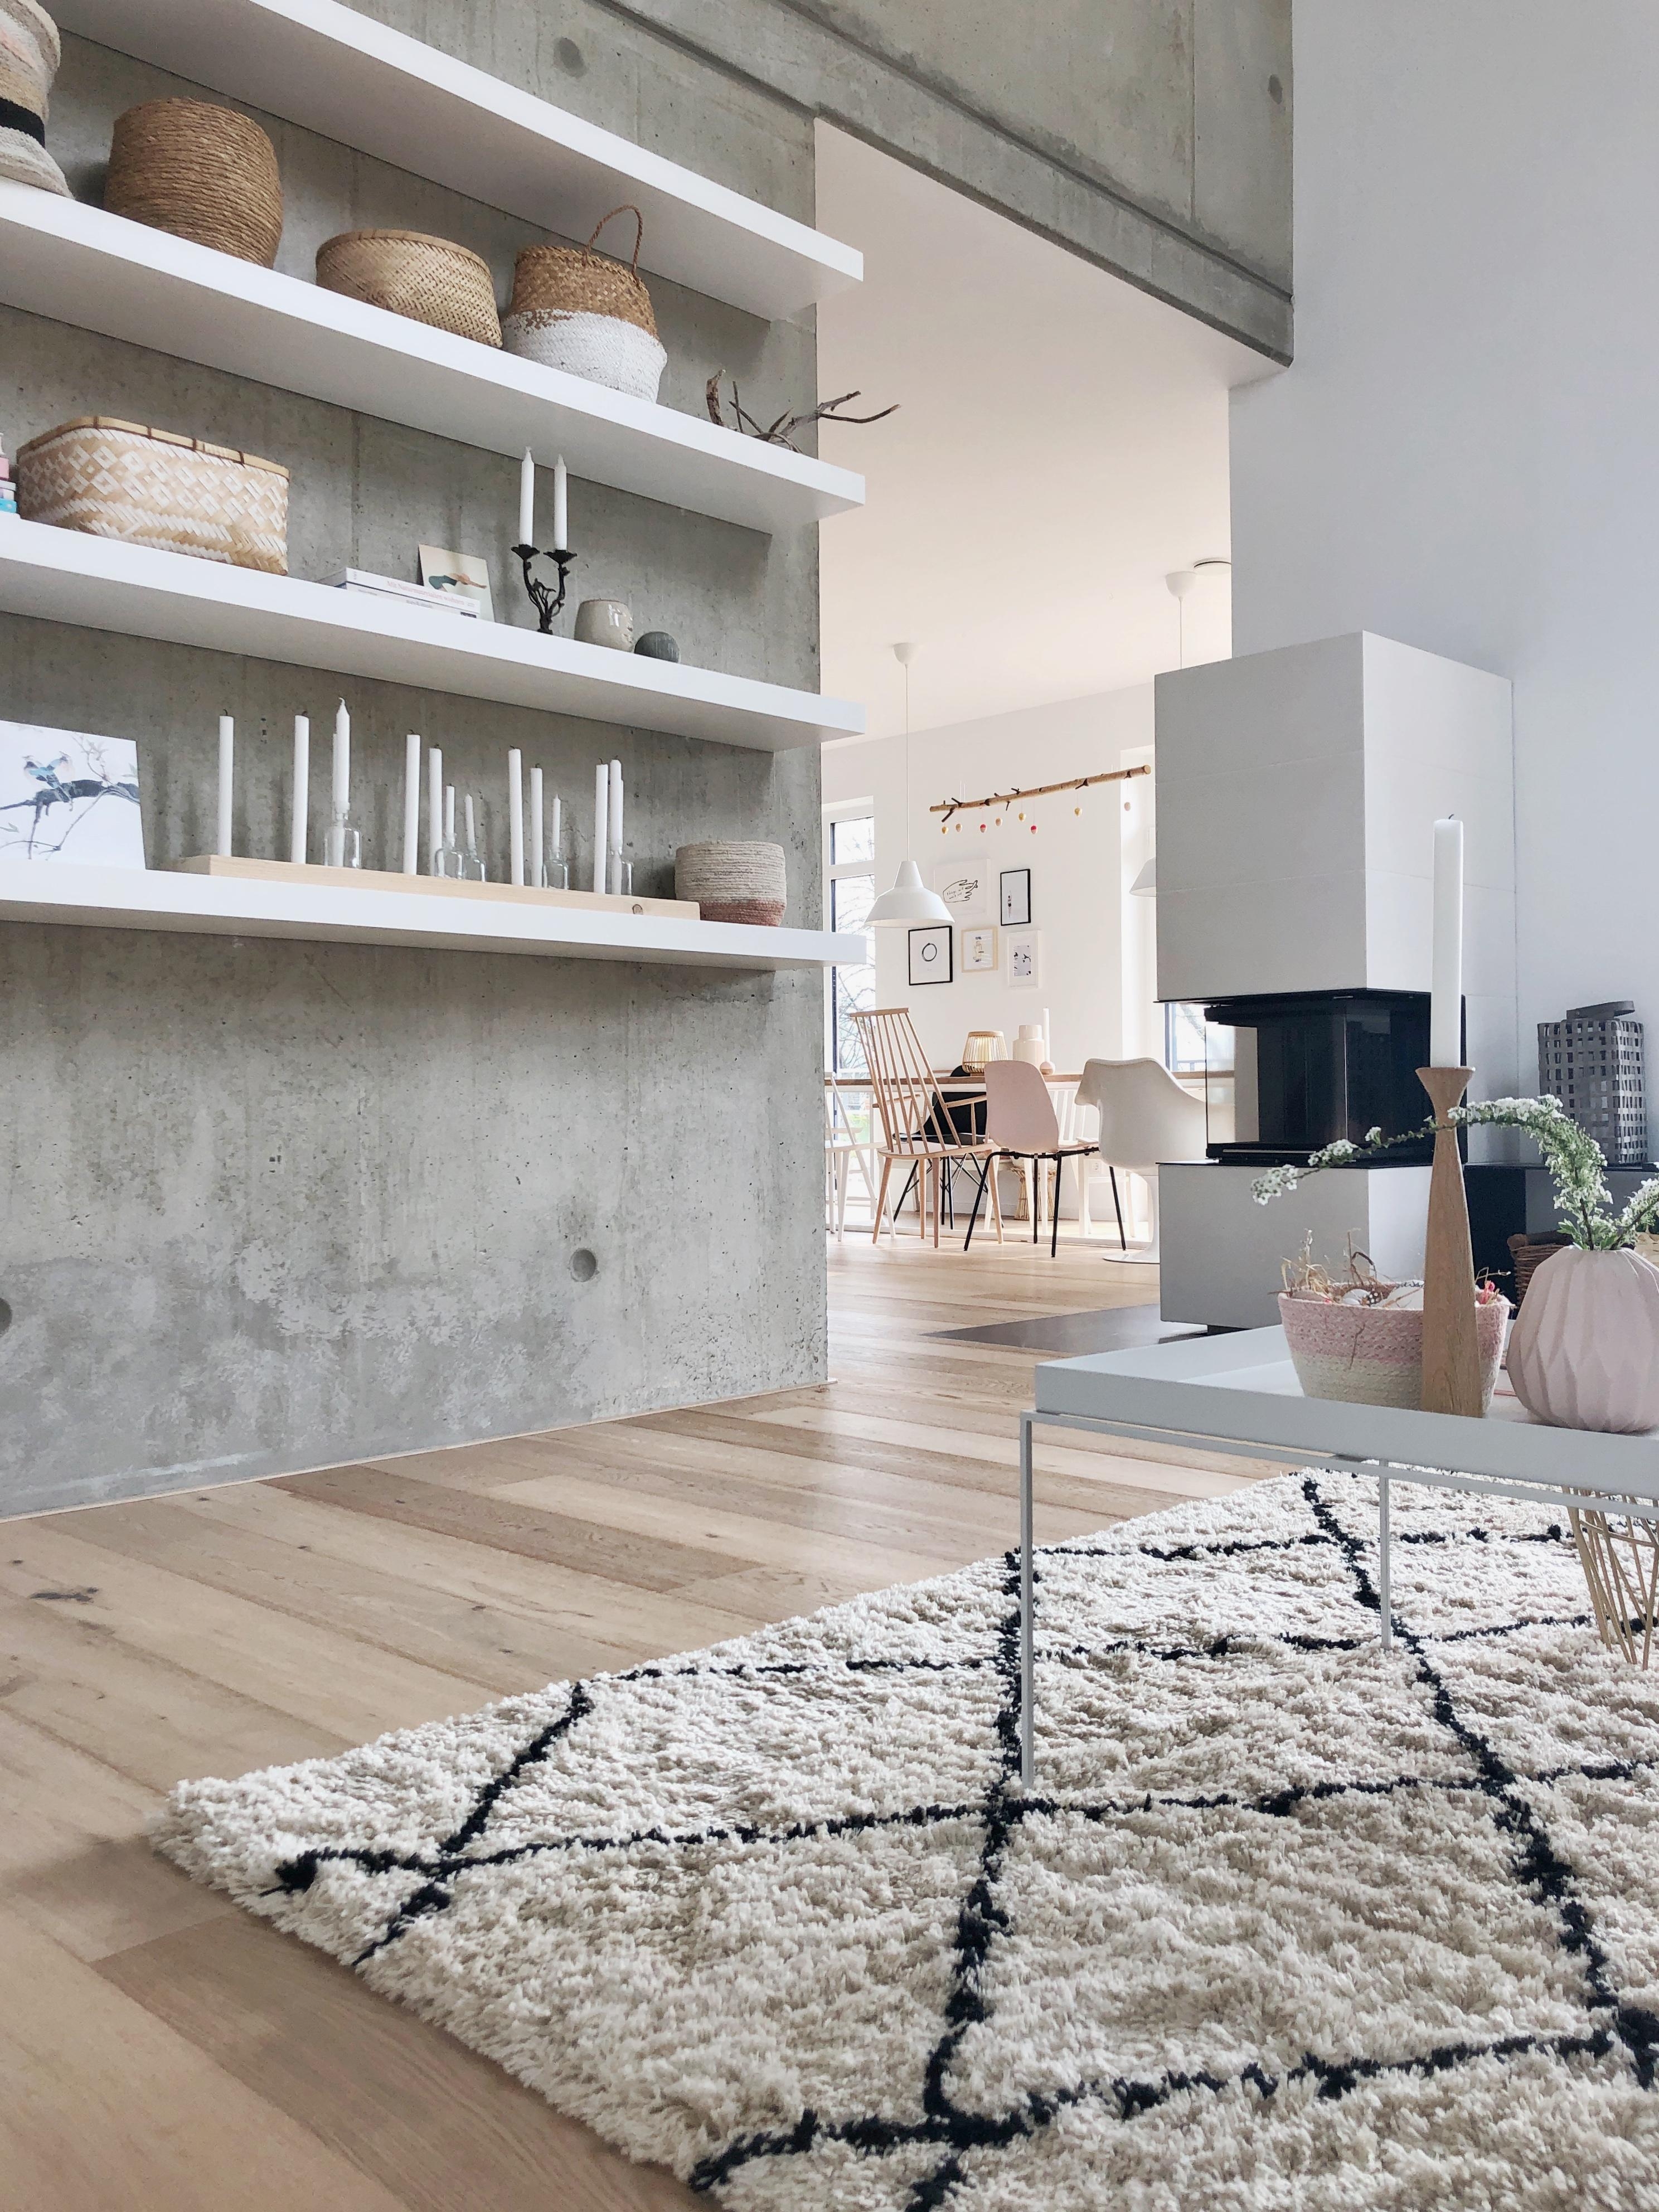 Sichtbeton im Wohnzimmer!
#sichtbeton#livingroom#betonwand#esstisch#offeneswohnen#whitehome#minimalism